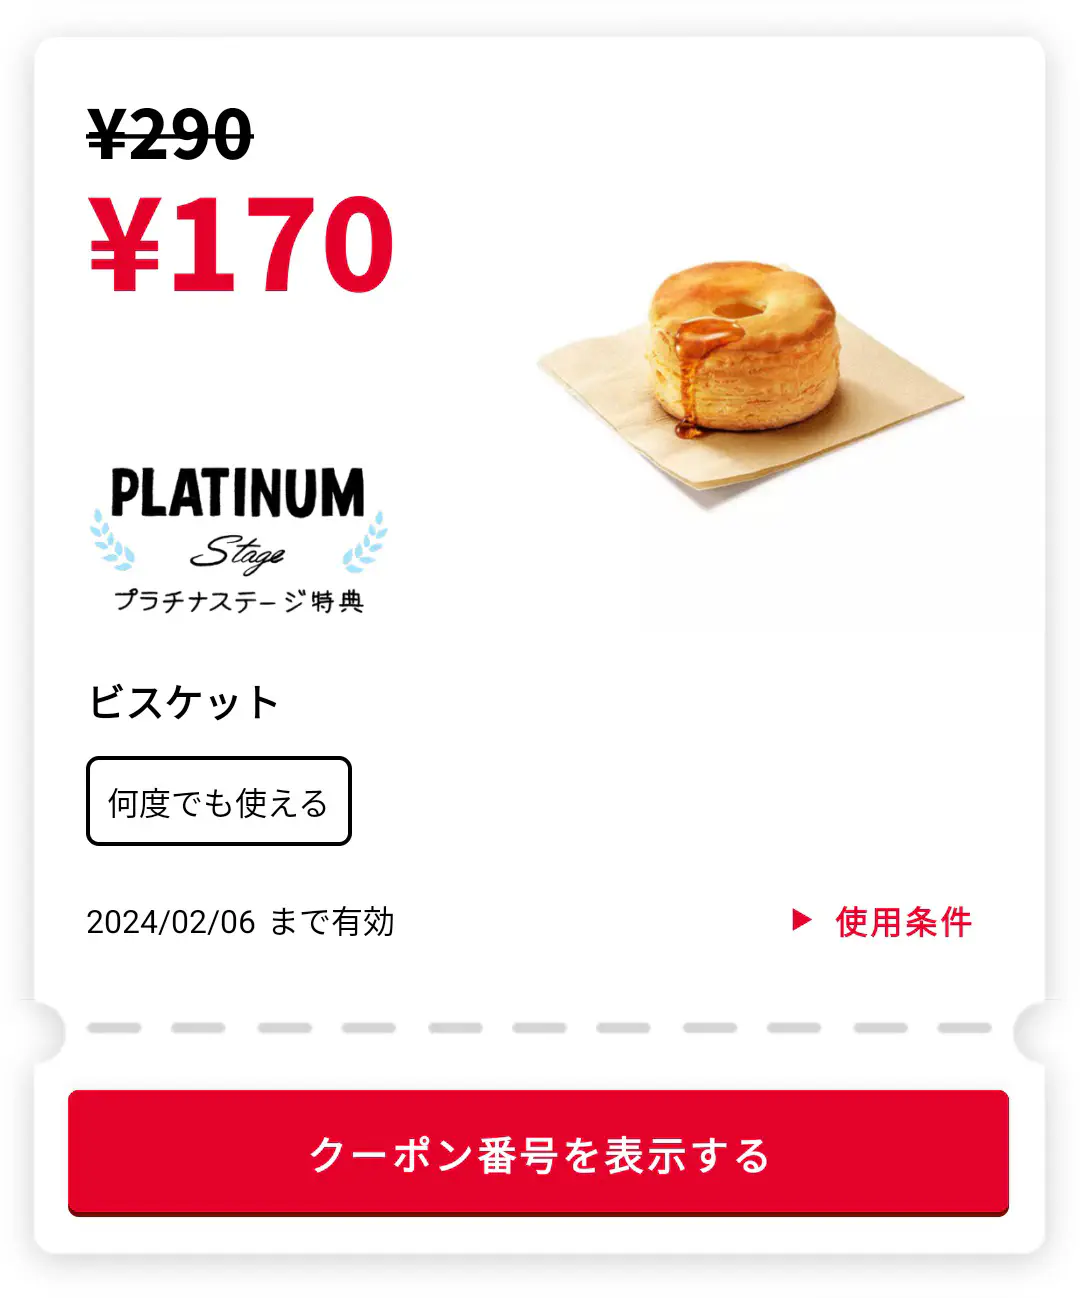 2024/01/08：松饼x1 = 170 日元